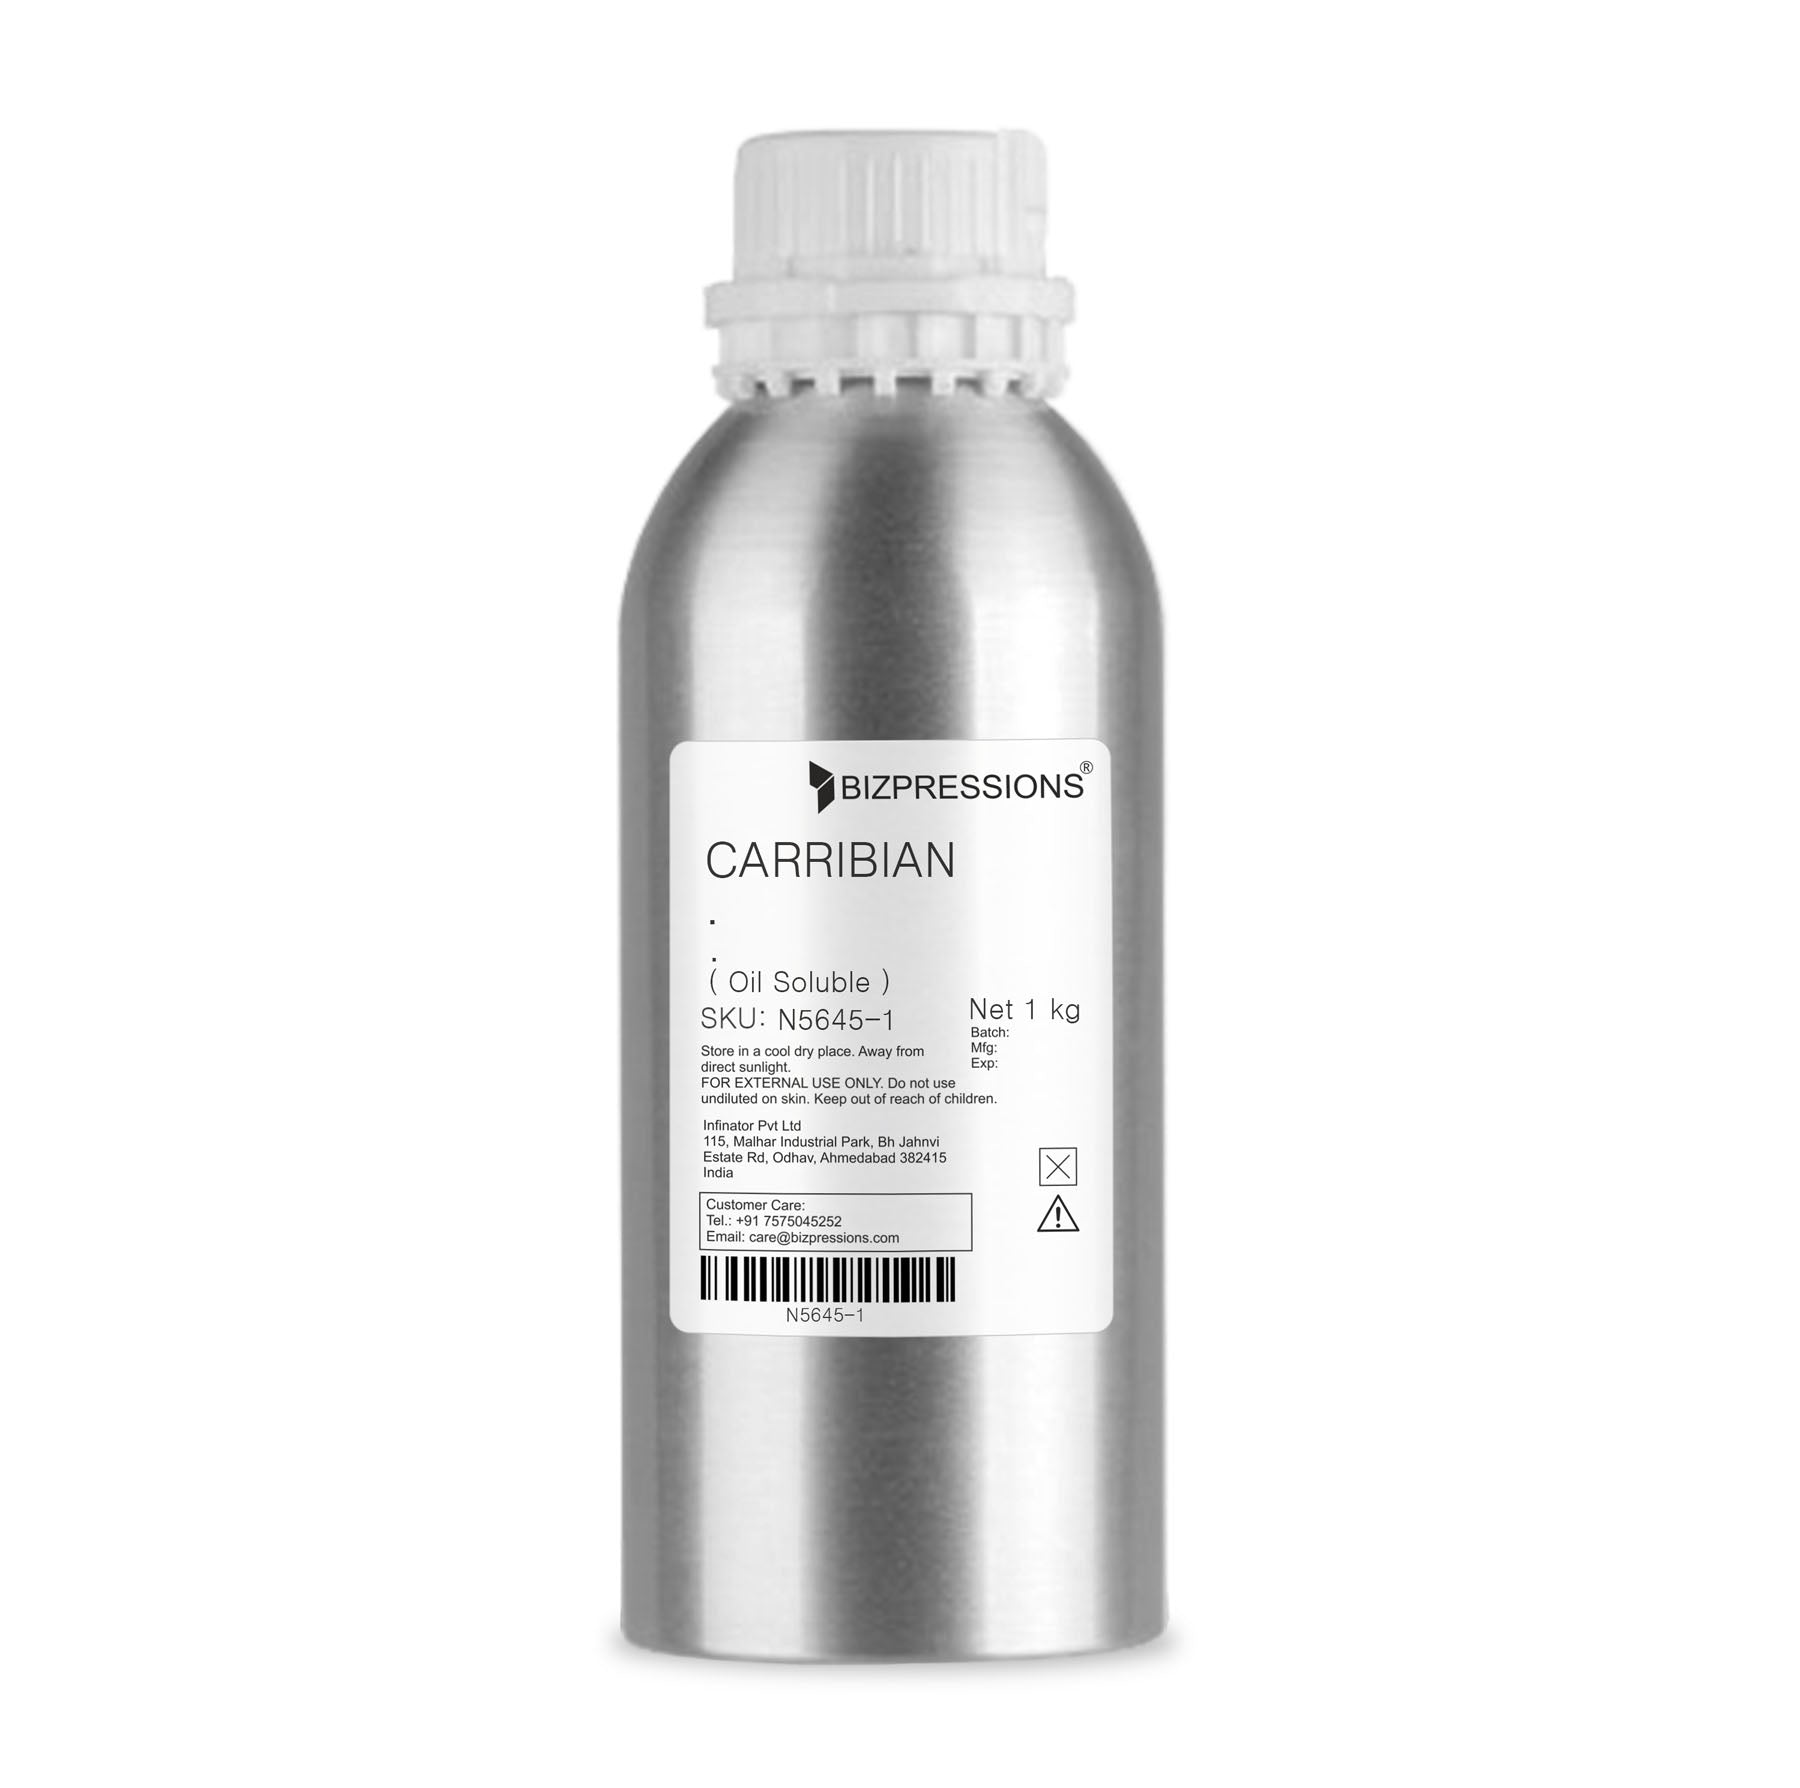 CARRIBIAN - Fragrance ( Oil Soluble ) - 1 kg